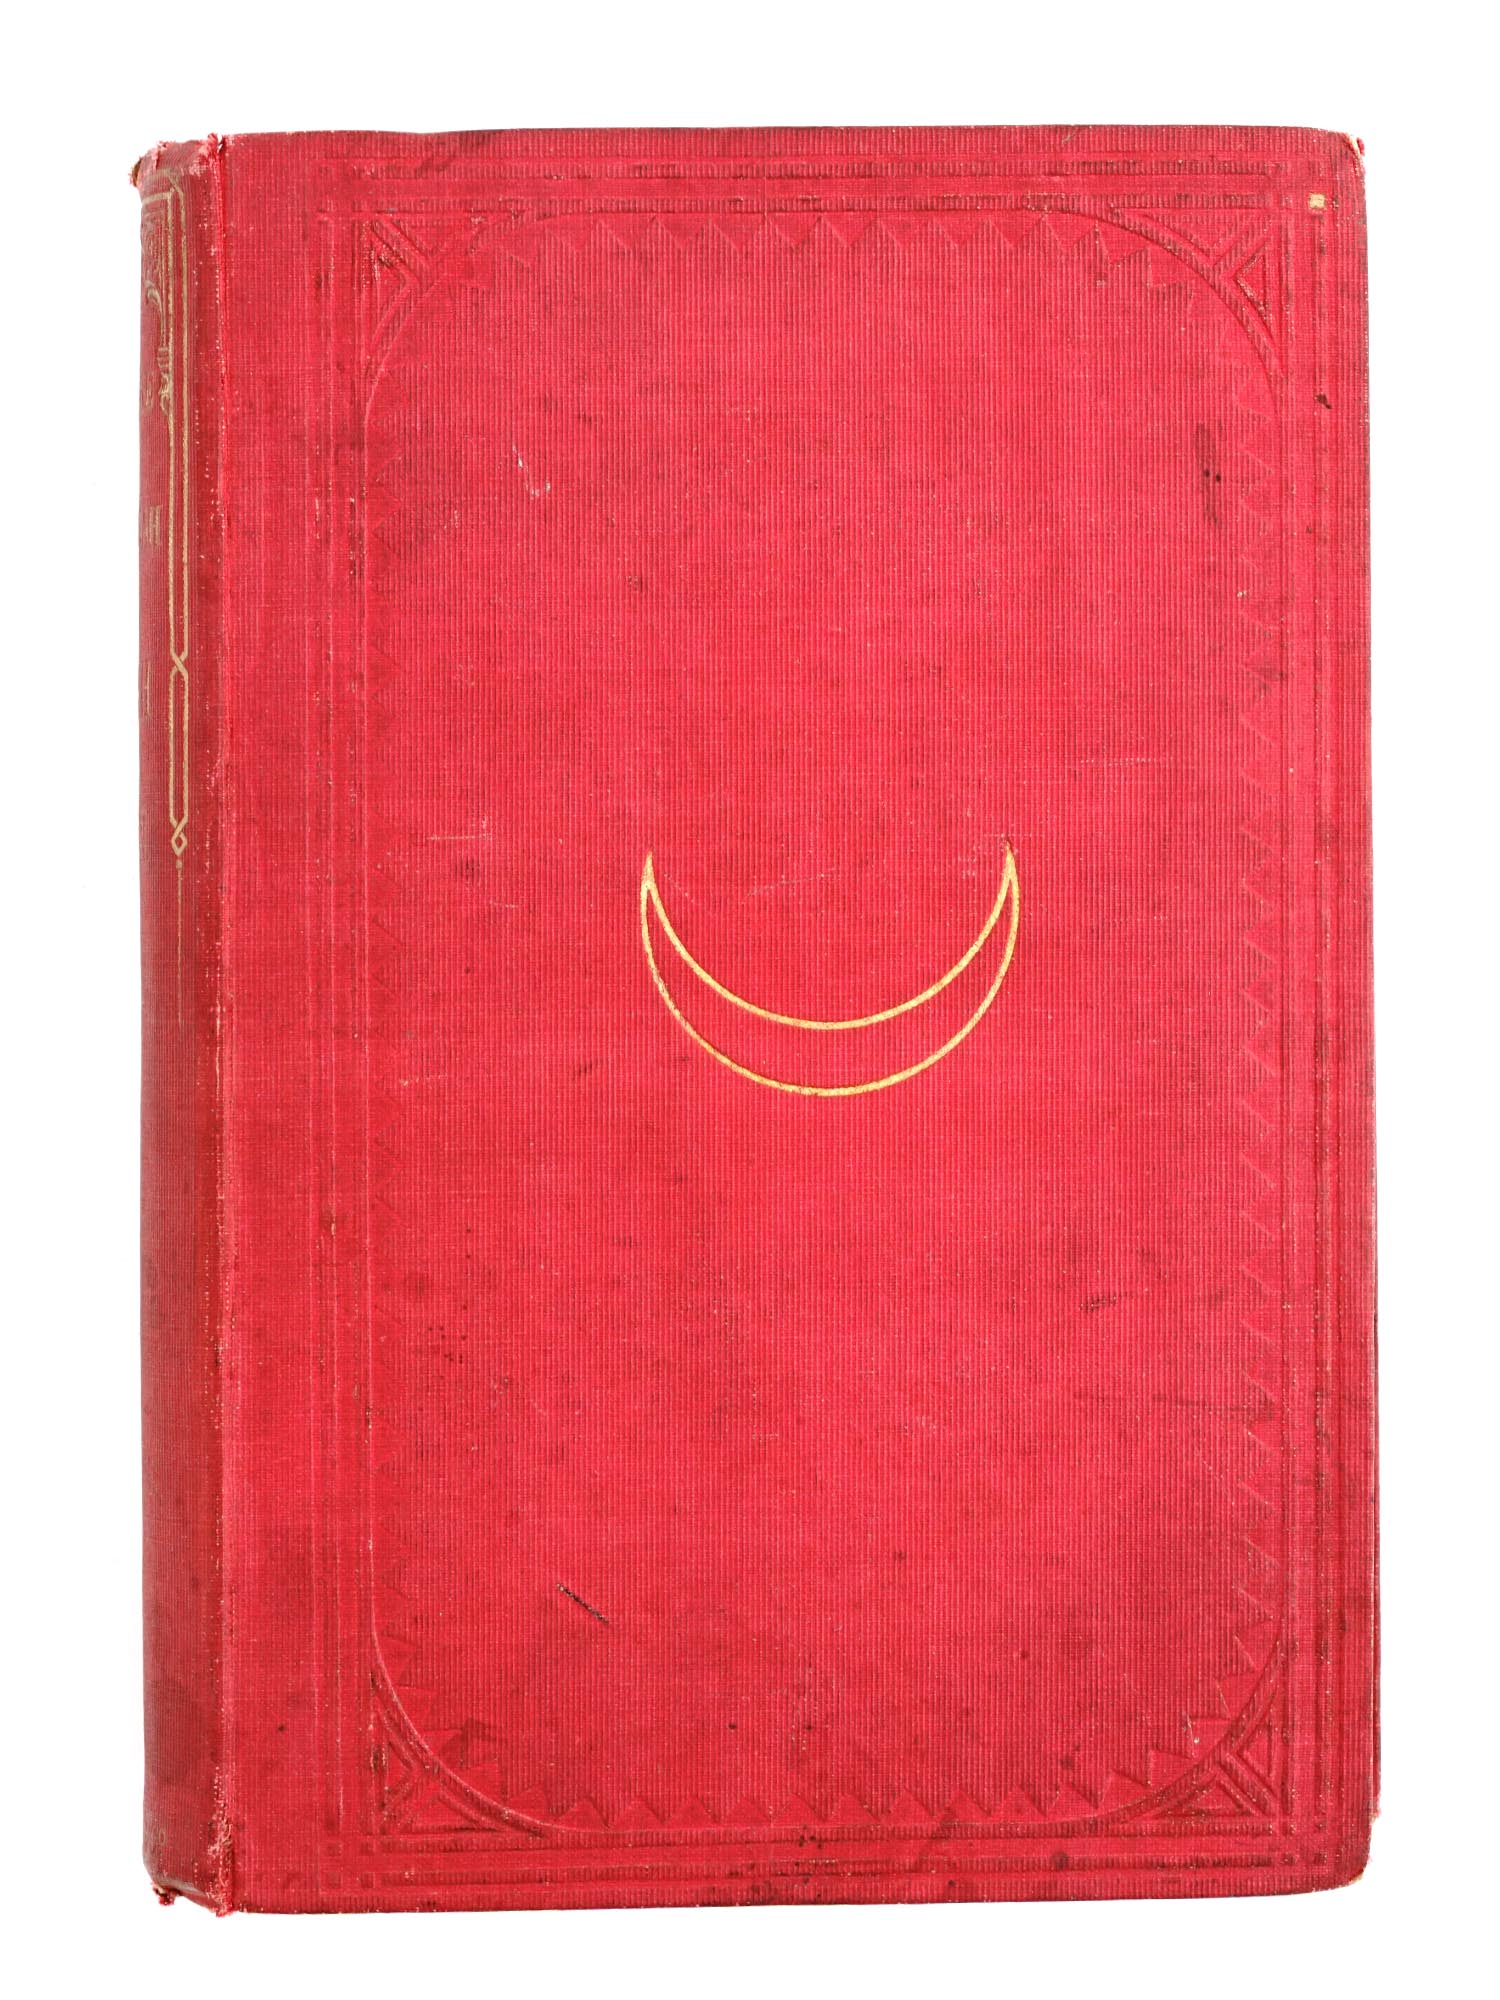 1856 BOOK BURTONS PILGRIMAGE TO MEDINAH AND MECCAH PIC-1